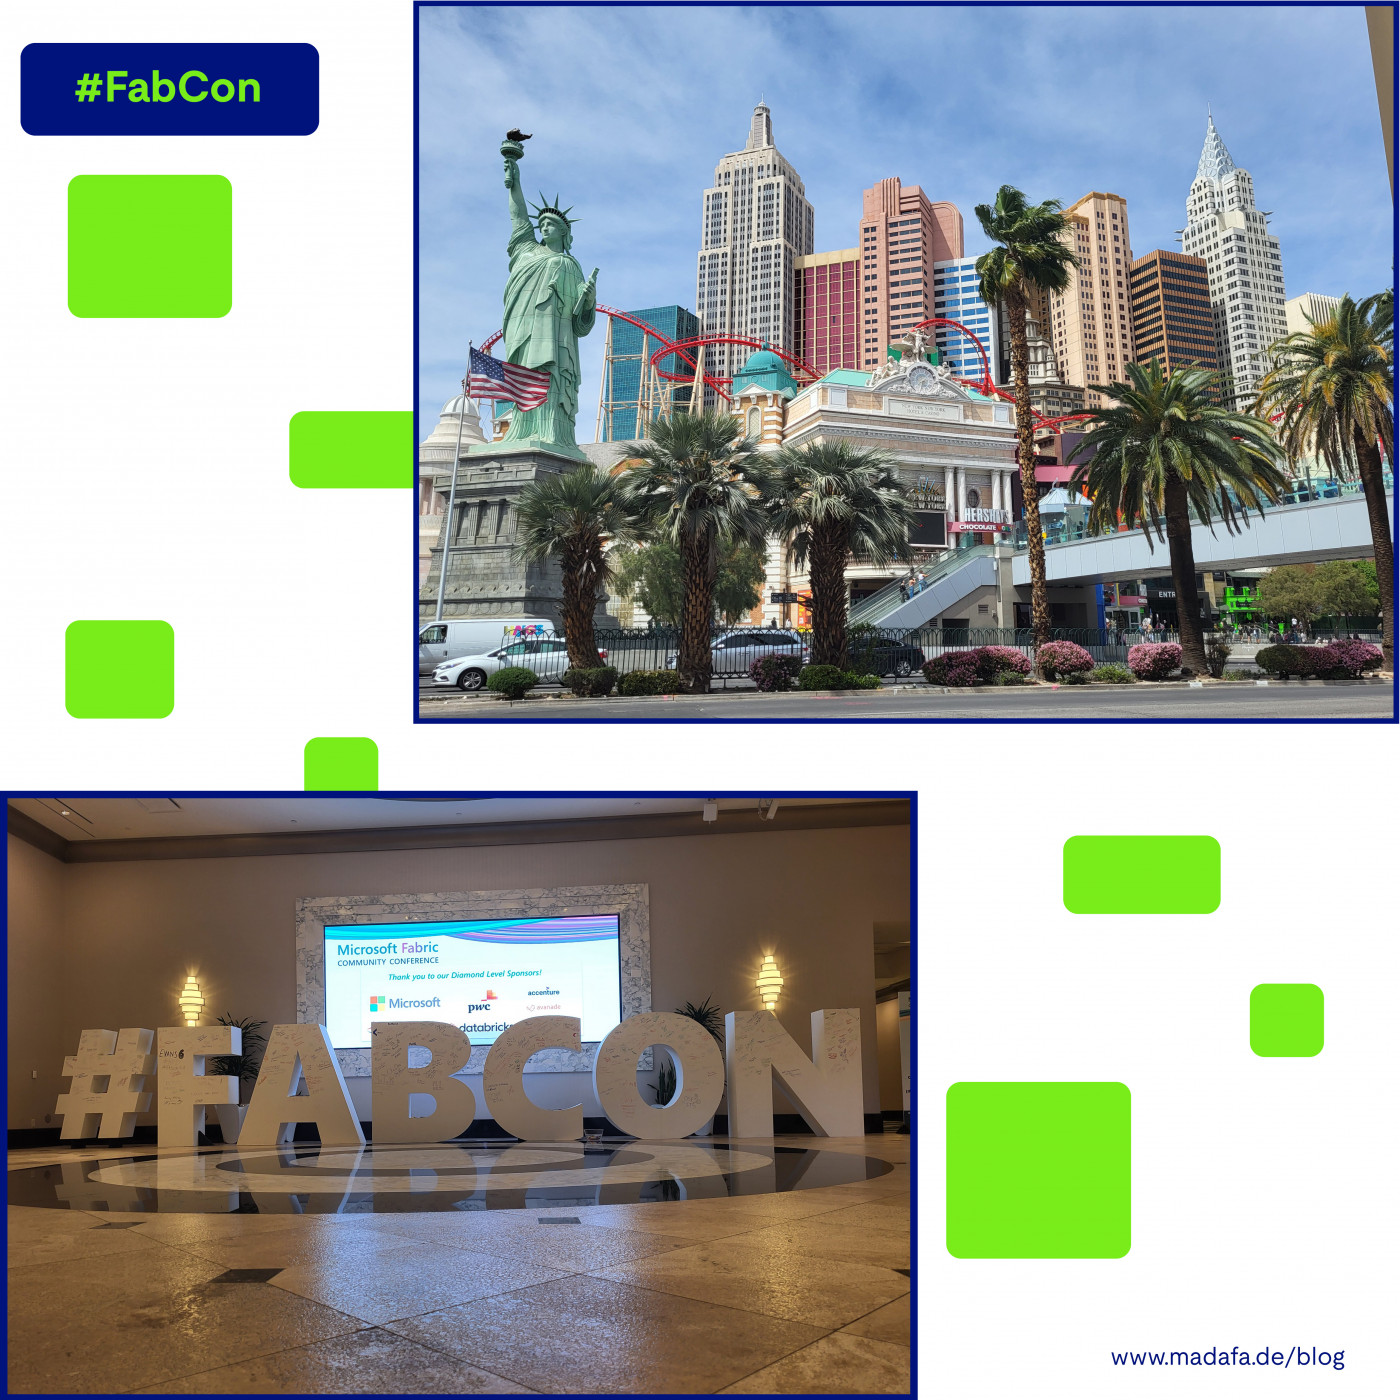 Mainzer Datenfabrik - #FabCon - Die erste Community Conference in Las Vegas